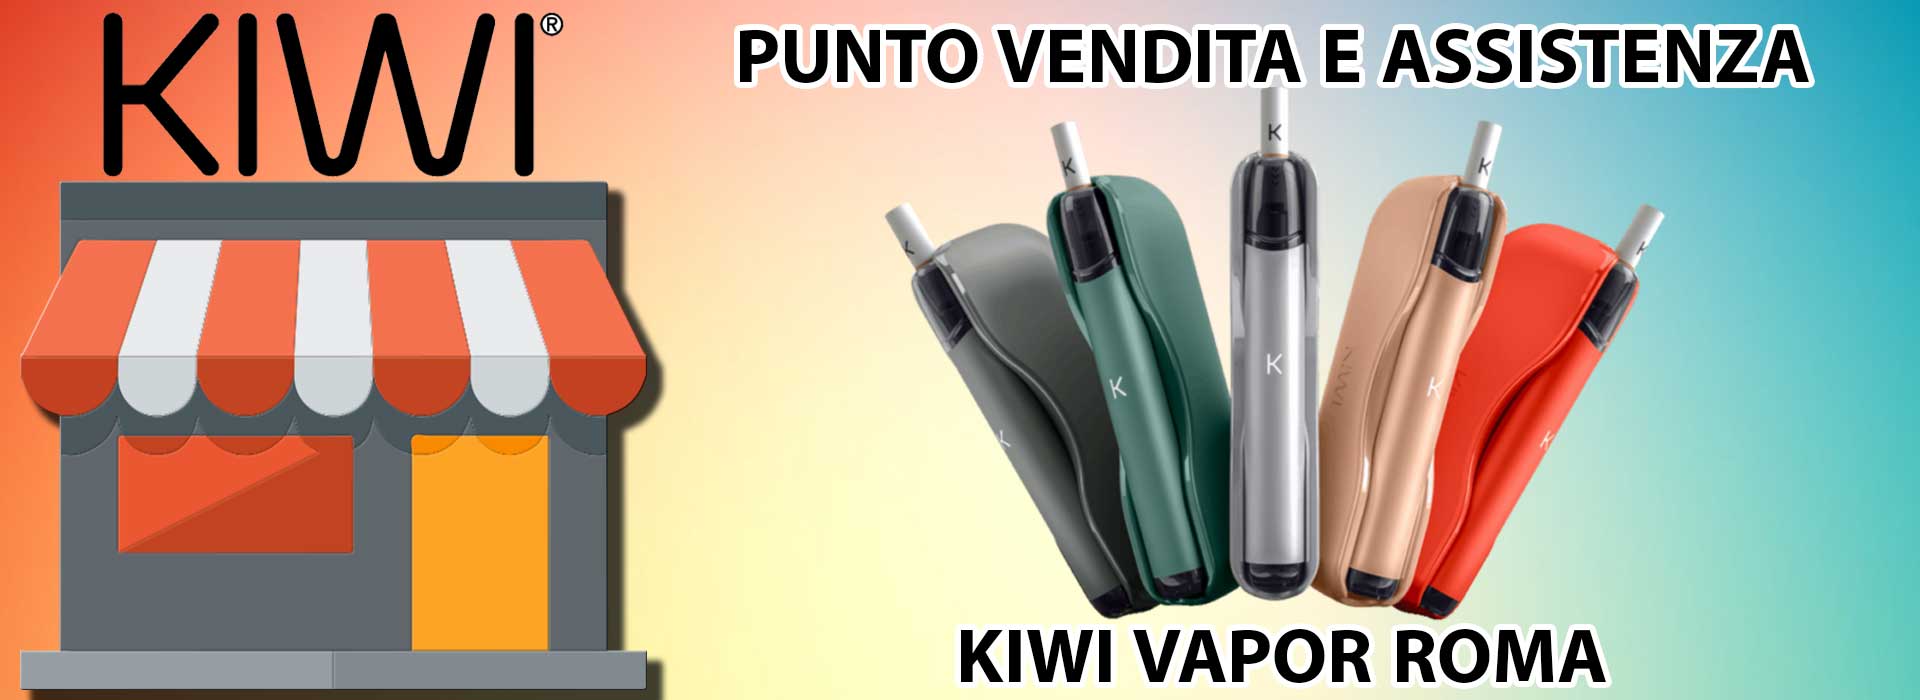 PUNTO VENDITA E ASSISTENZA KIWI ROMA - Smo-king Sigarette Elettroniche